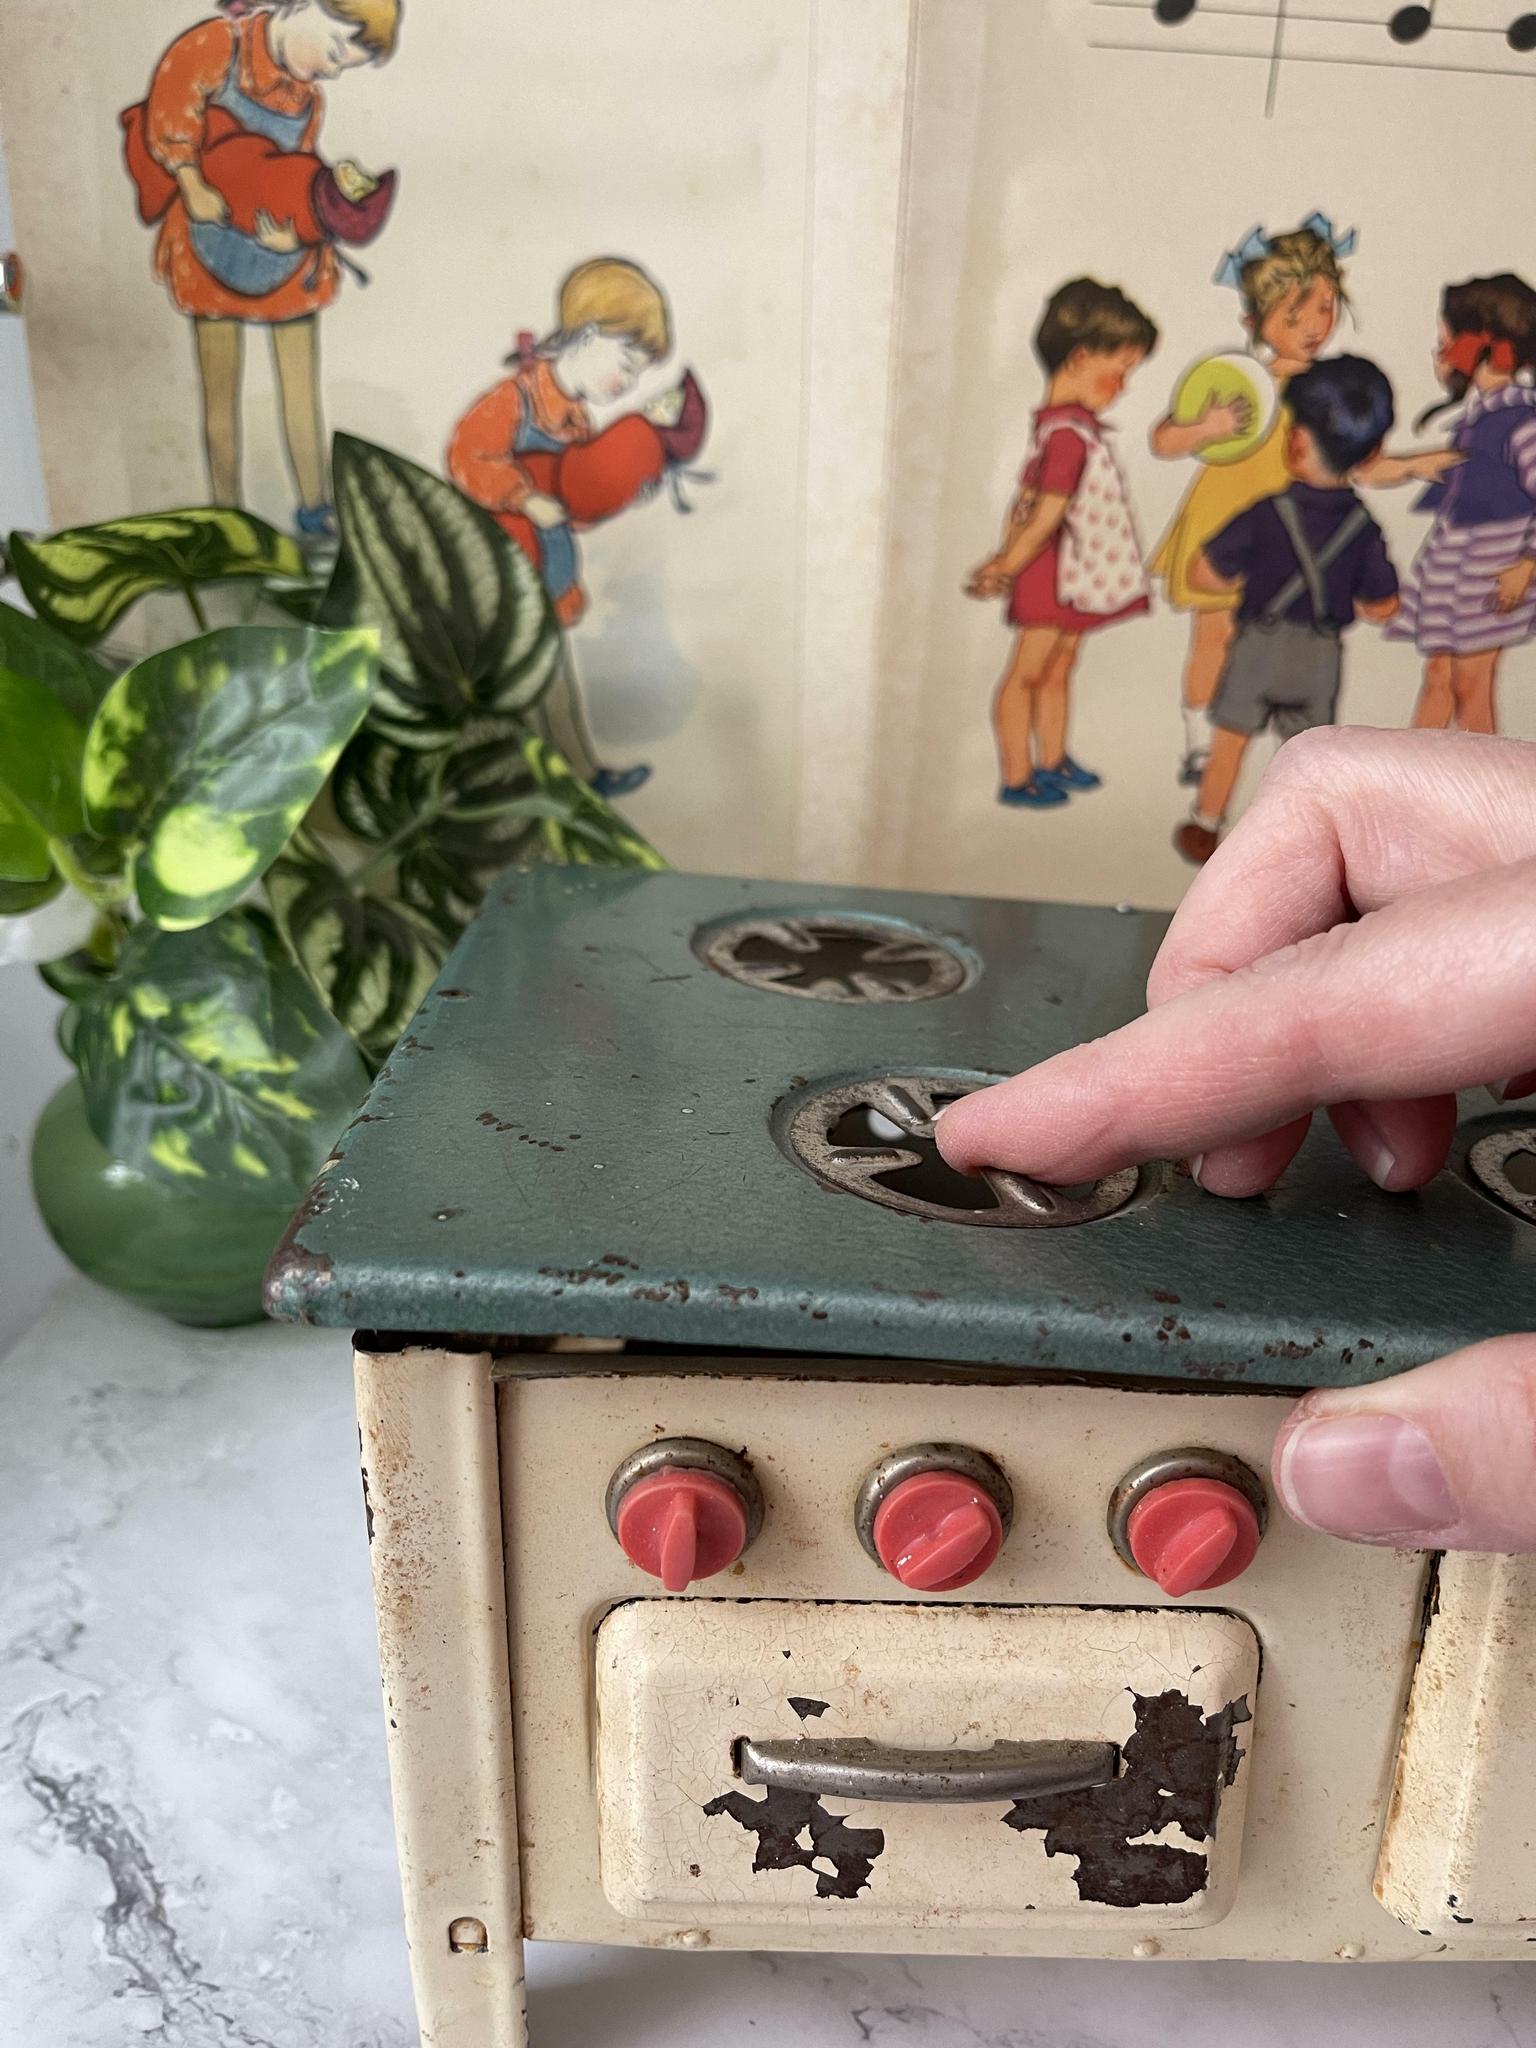 My Home Детская электрическая печь с аксессуарами